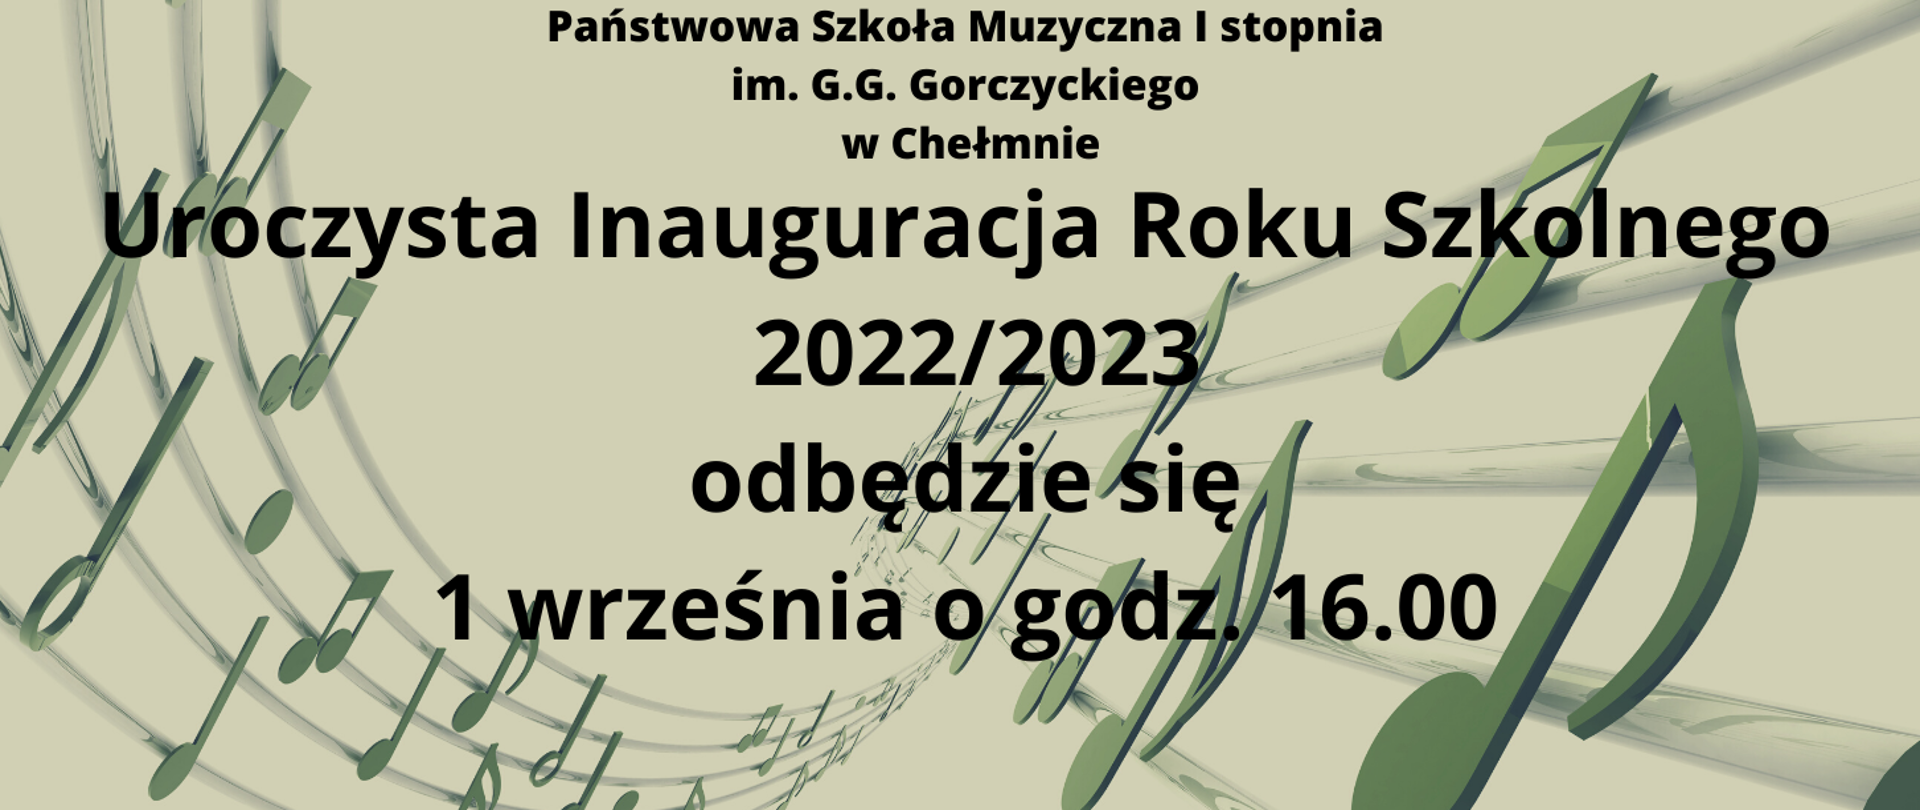 Na jasno zielonym tle, ciemnozielona pięciolinia z nutami oraz czarny napis informujący o inauguracji roku szkolnego 2022/2023